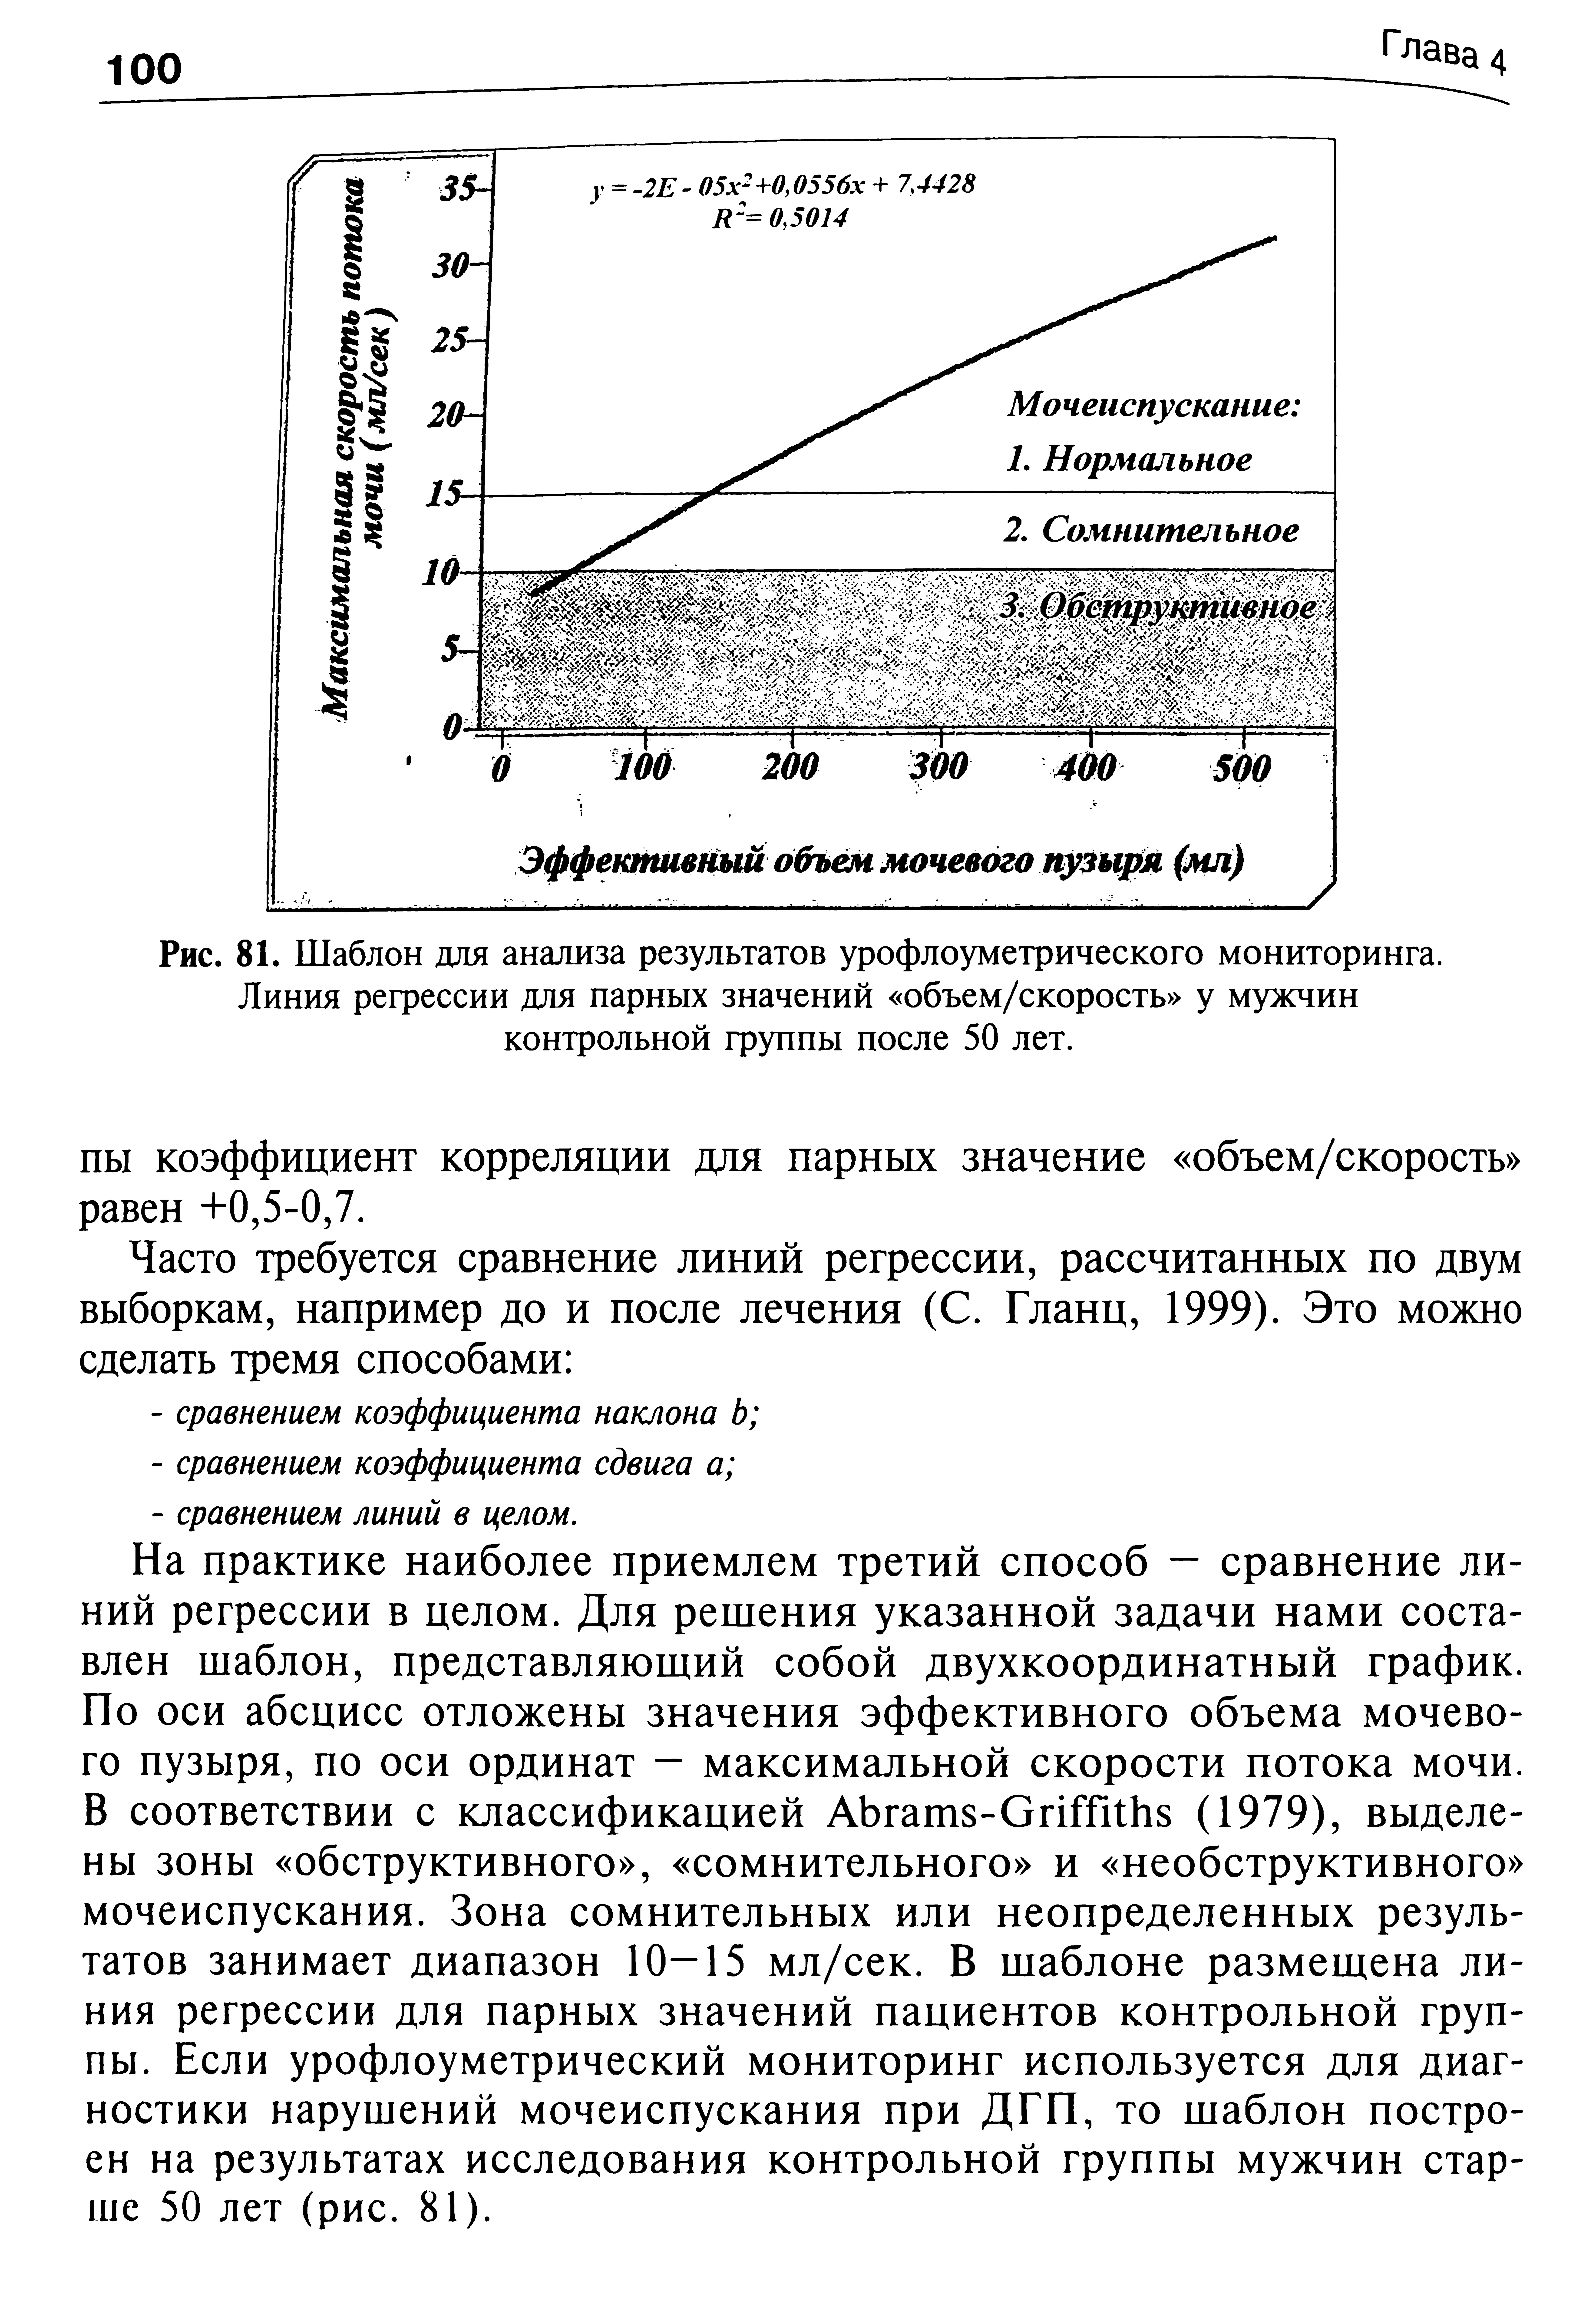 Рис. 81. Шаблон для анализа результатов урофлоуметрического мониторинга. Линия регрессии для парных значений объем/скорость у мужчин контрольной группы после 50 лет.